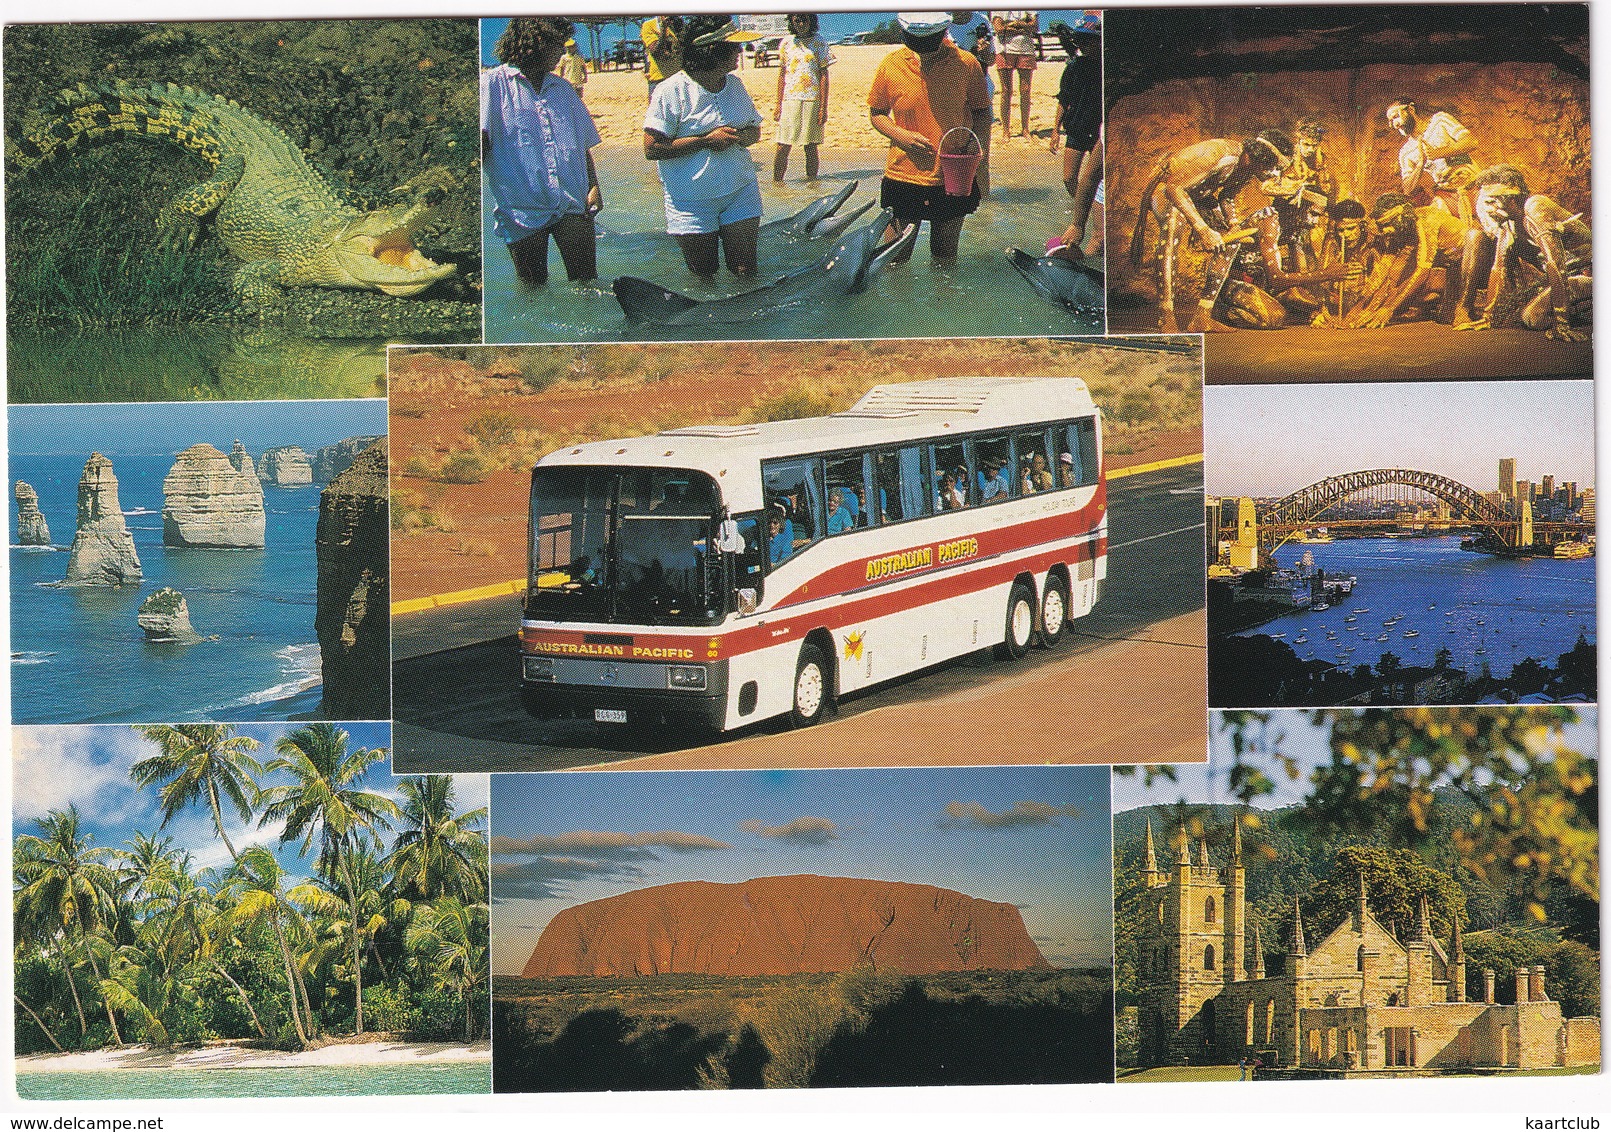 Australia: MERCEDES AUTOBUS/COACH 'Australian Pacific Tours' - Buses & Coaches